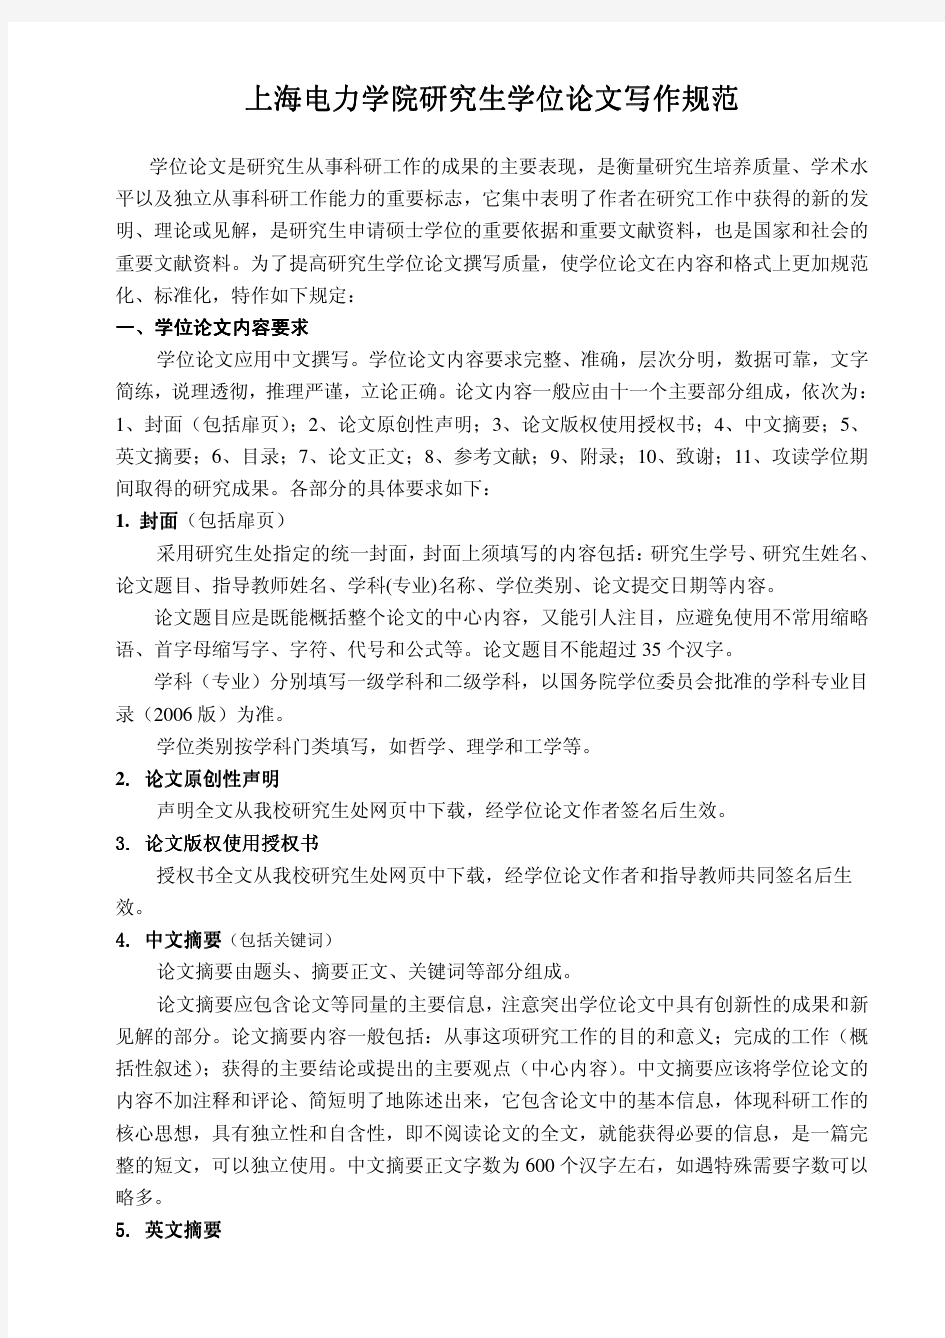 上海电力学院研究生学位论文写作规范